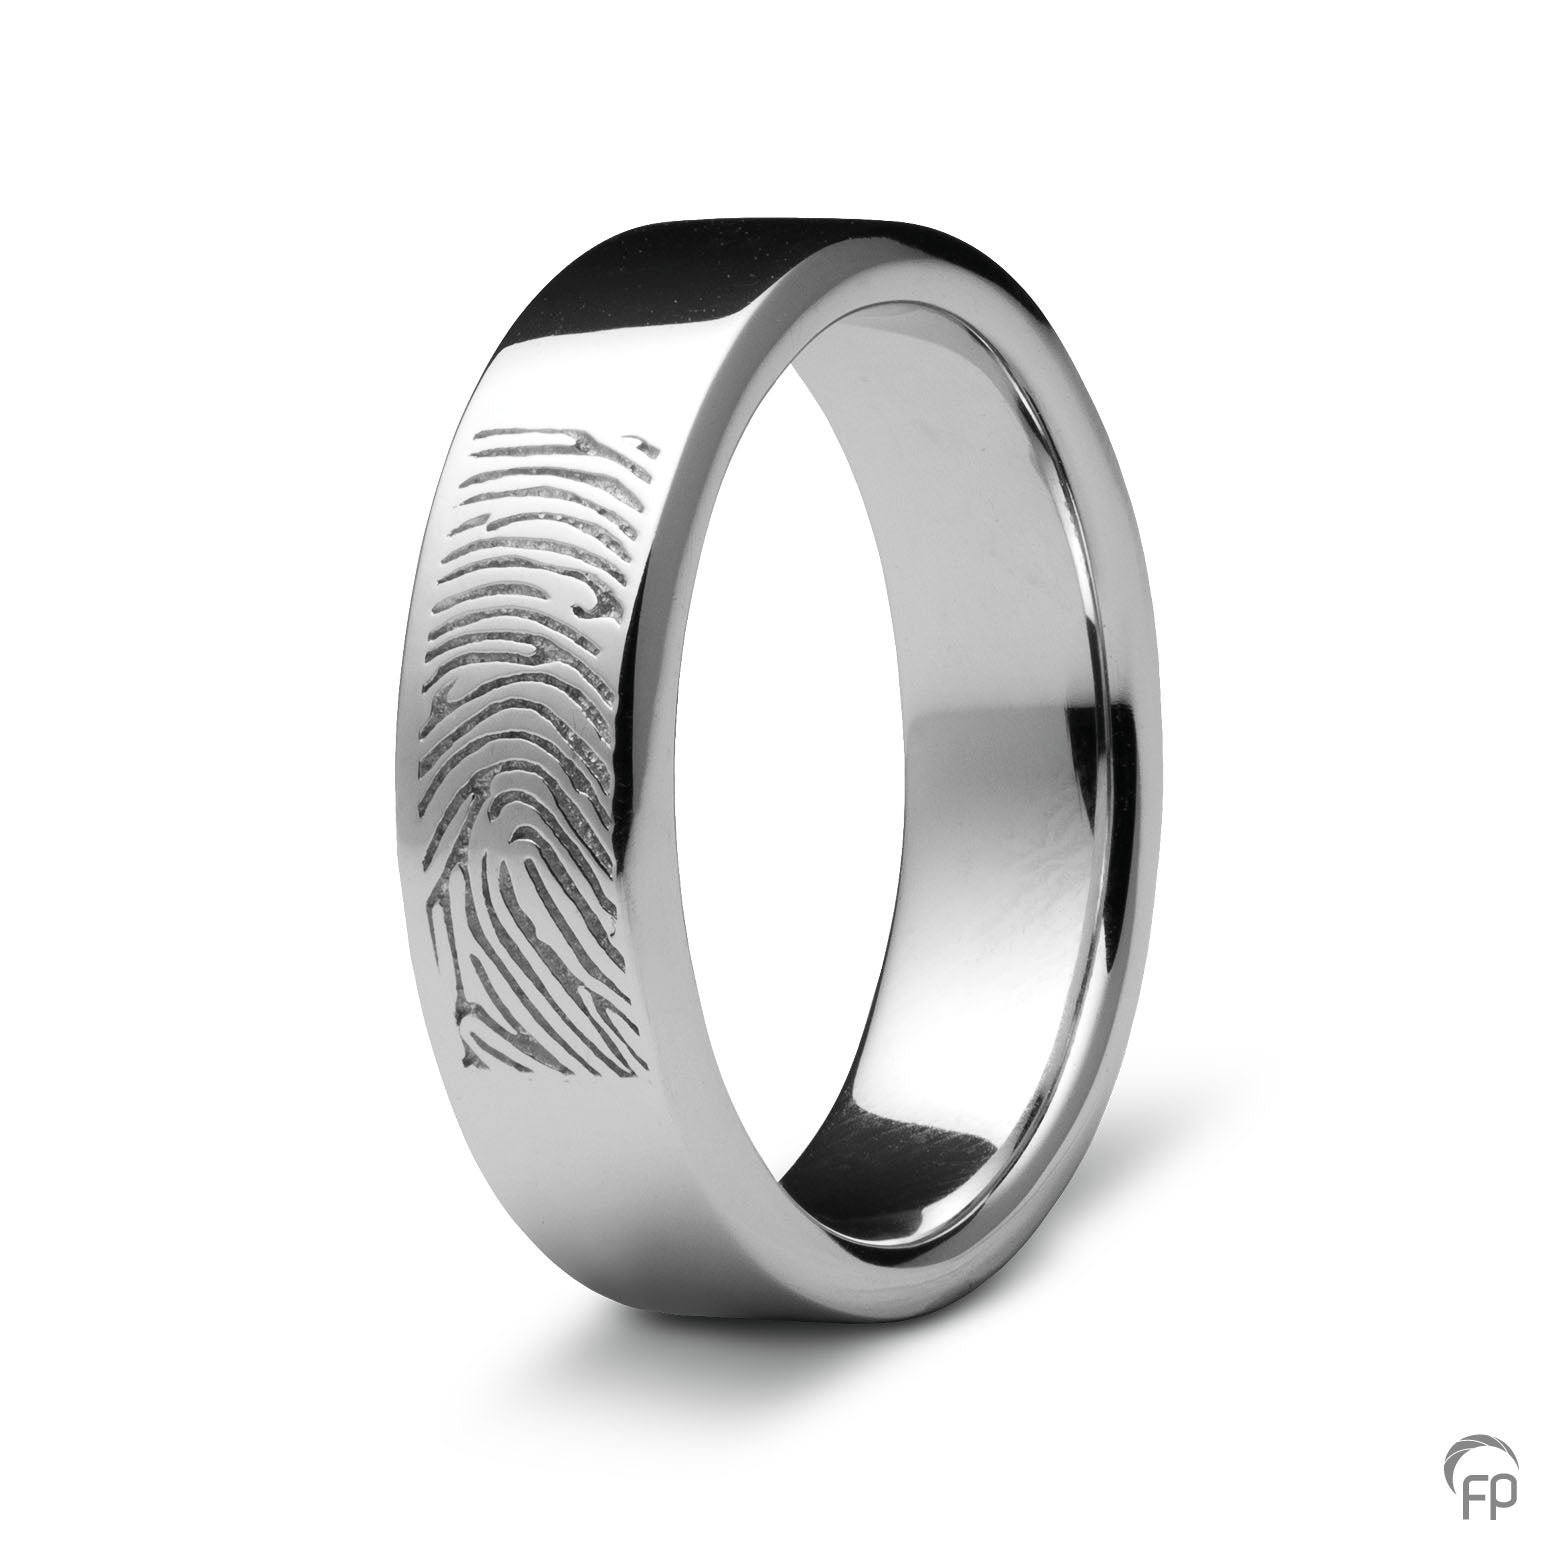 Deze ring van 8 mm breedte met vingerafdruk, heeft een stijlvol en strak design. Het is een tijdloos gedenksieraad met een afwerking naar keuze in glans of matte look. 